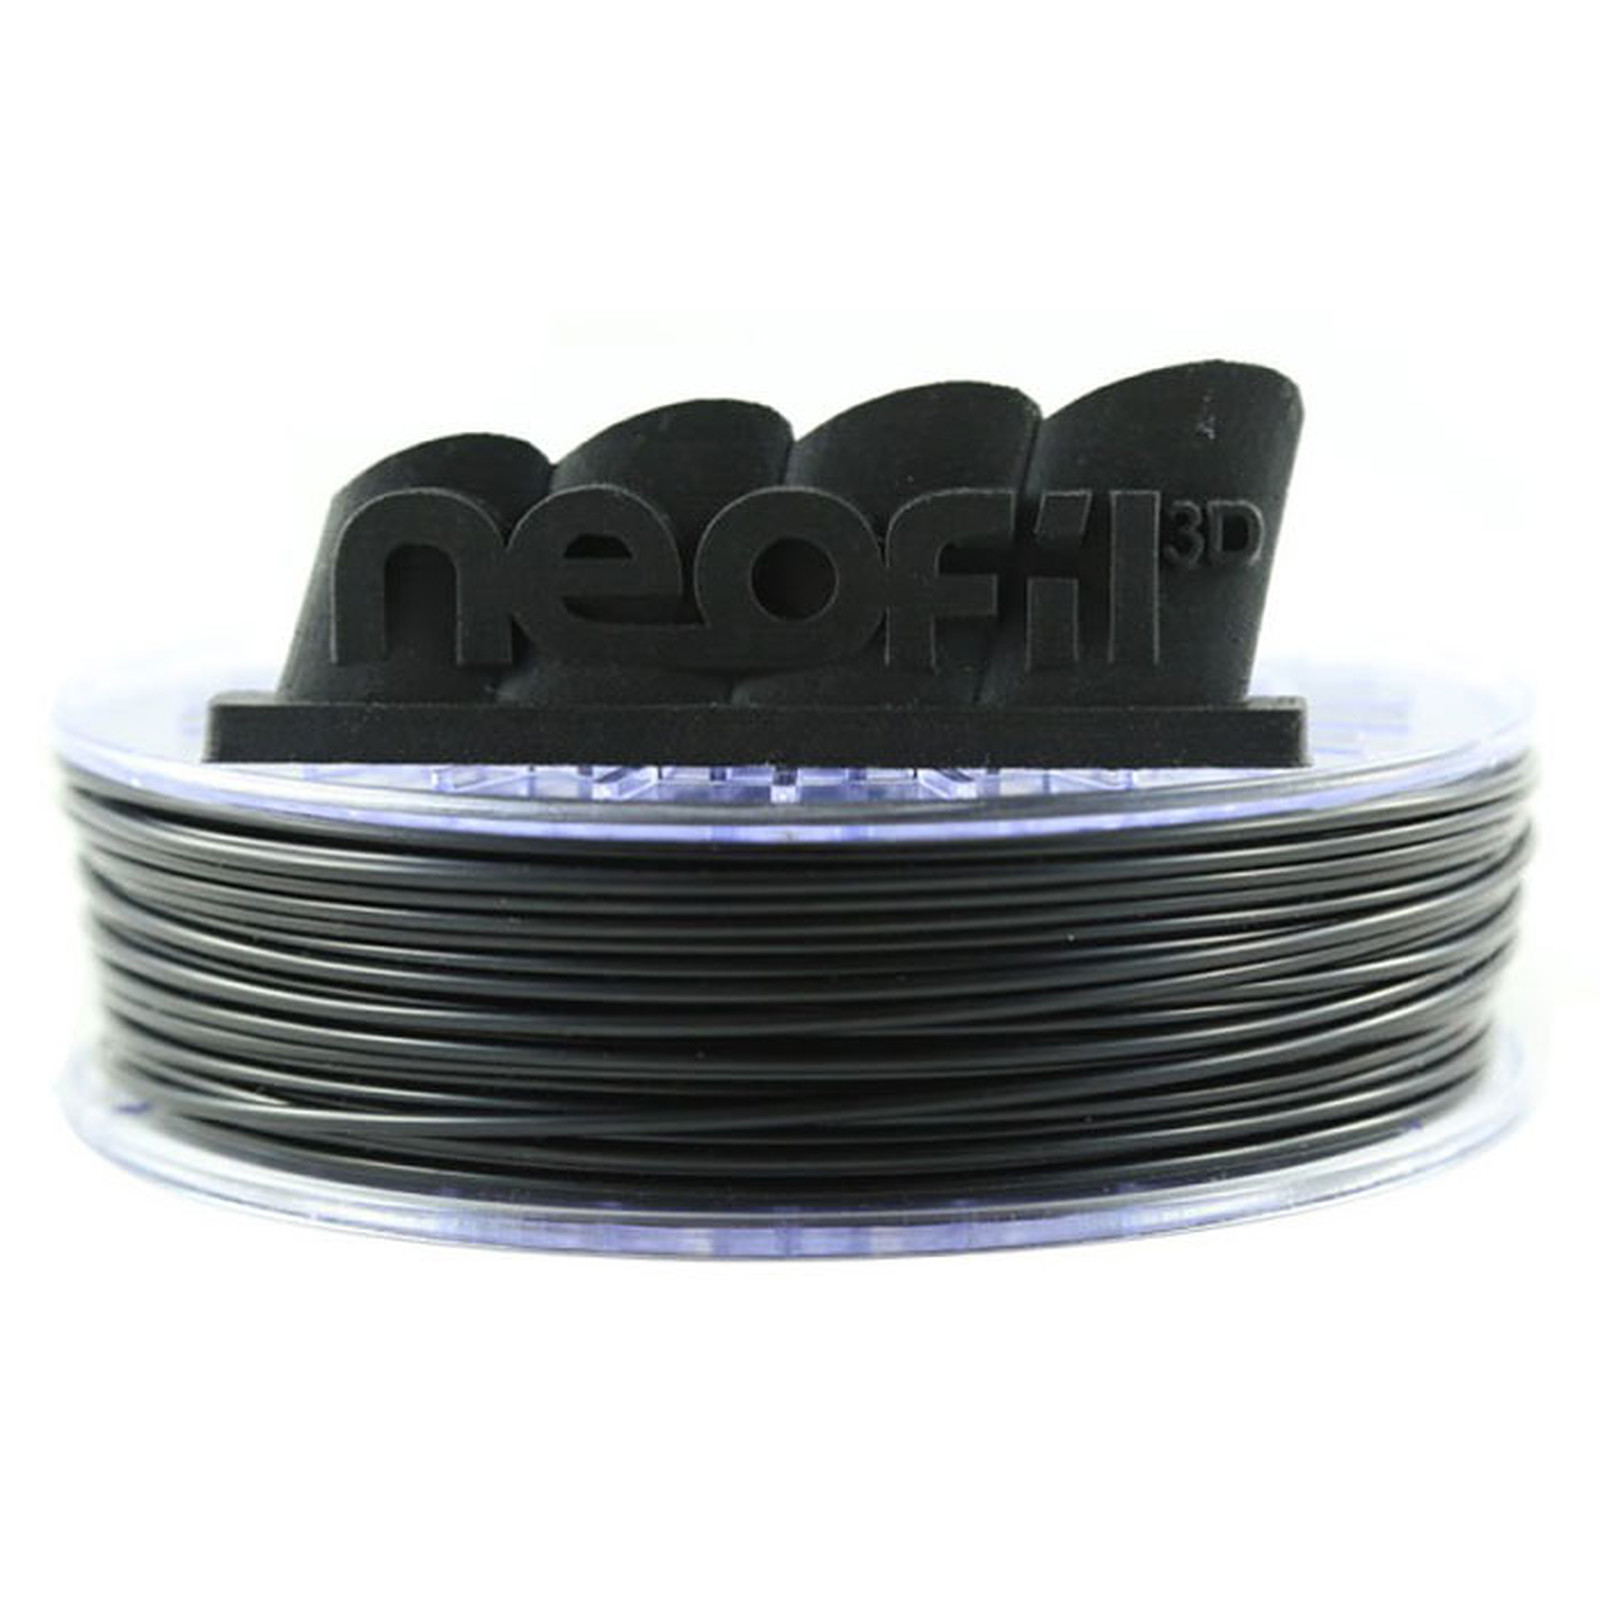 Neofil3D Bobine M-ABS 1.75mm 750g - Noir - Filament 3D Neofil3D